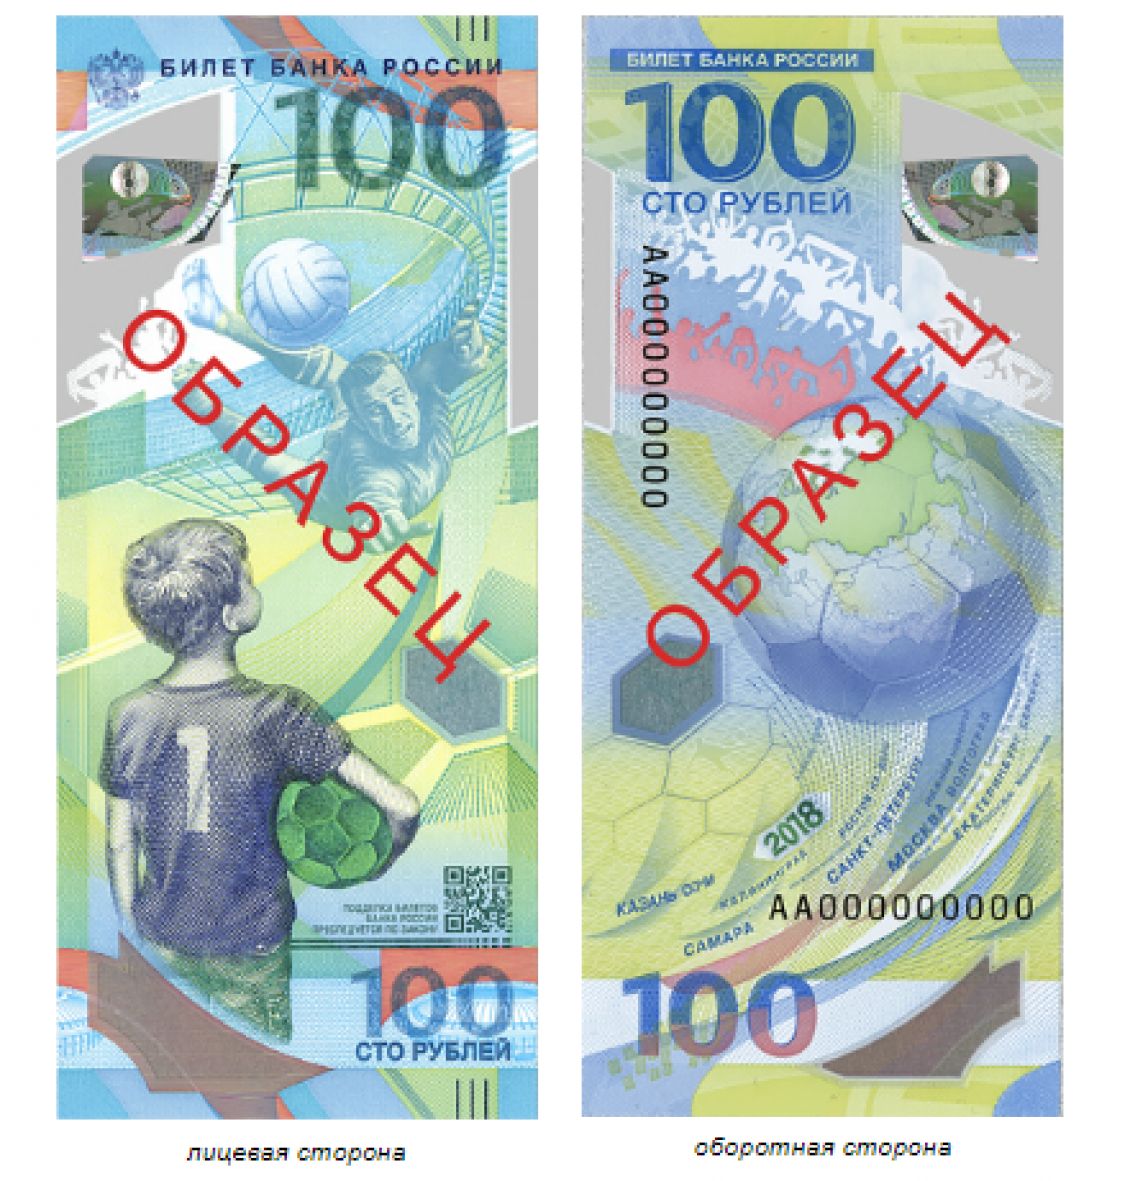 Памятная банкнота, которая посвящена чемпионату мира по футболу